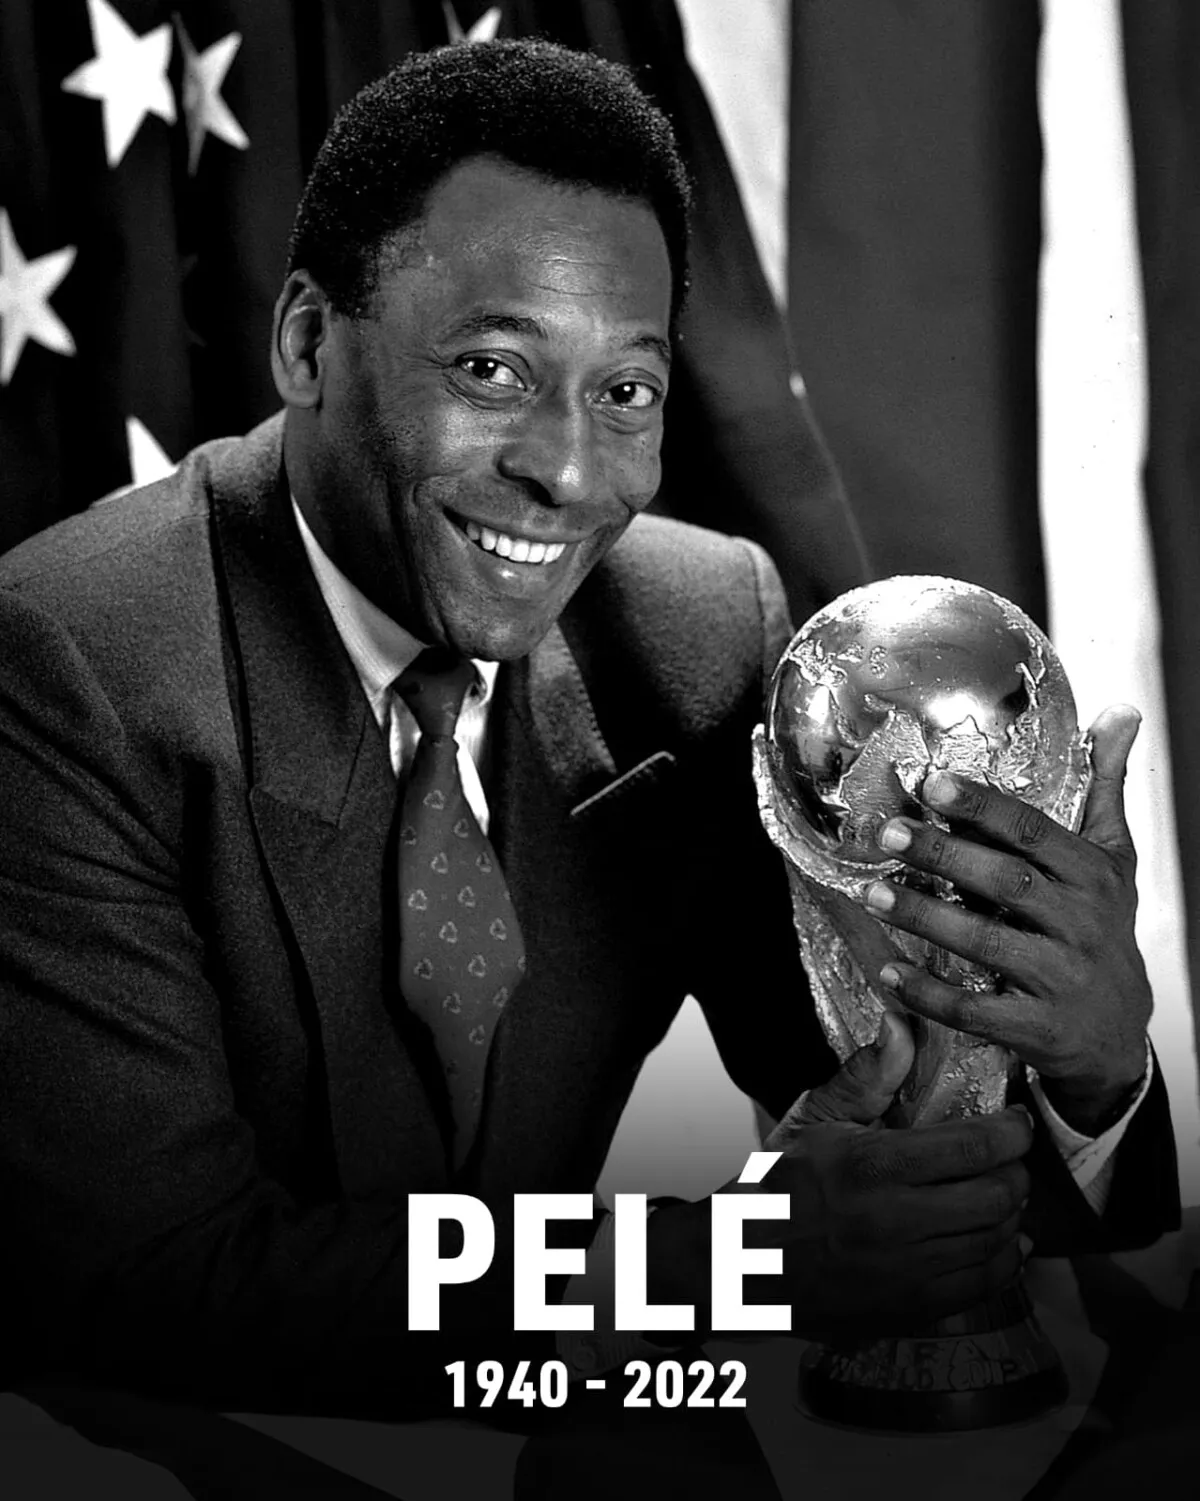 Murió el Rey del fútbol: el mundo llora el fallecimiento de Pelé